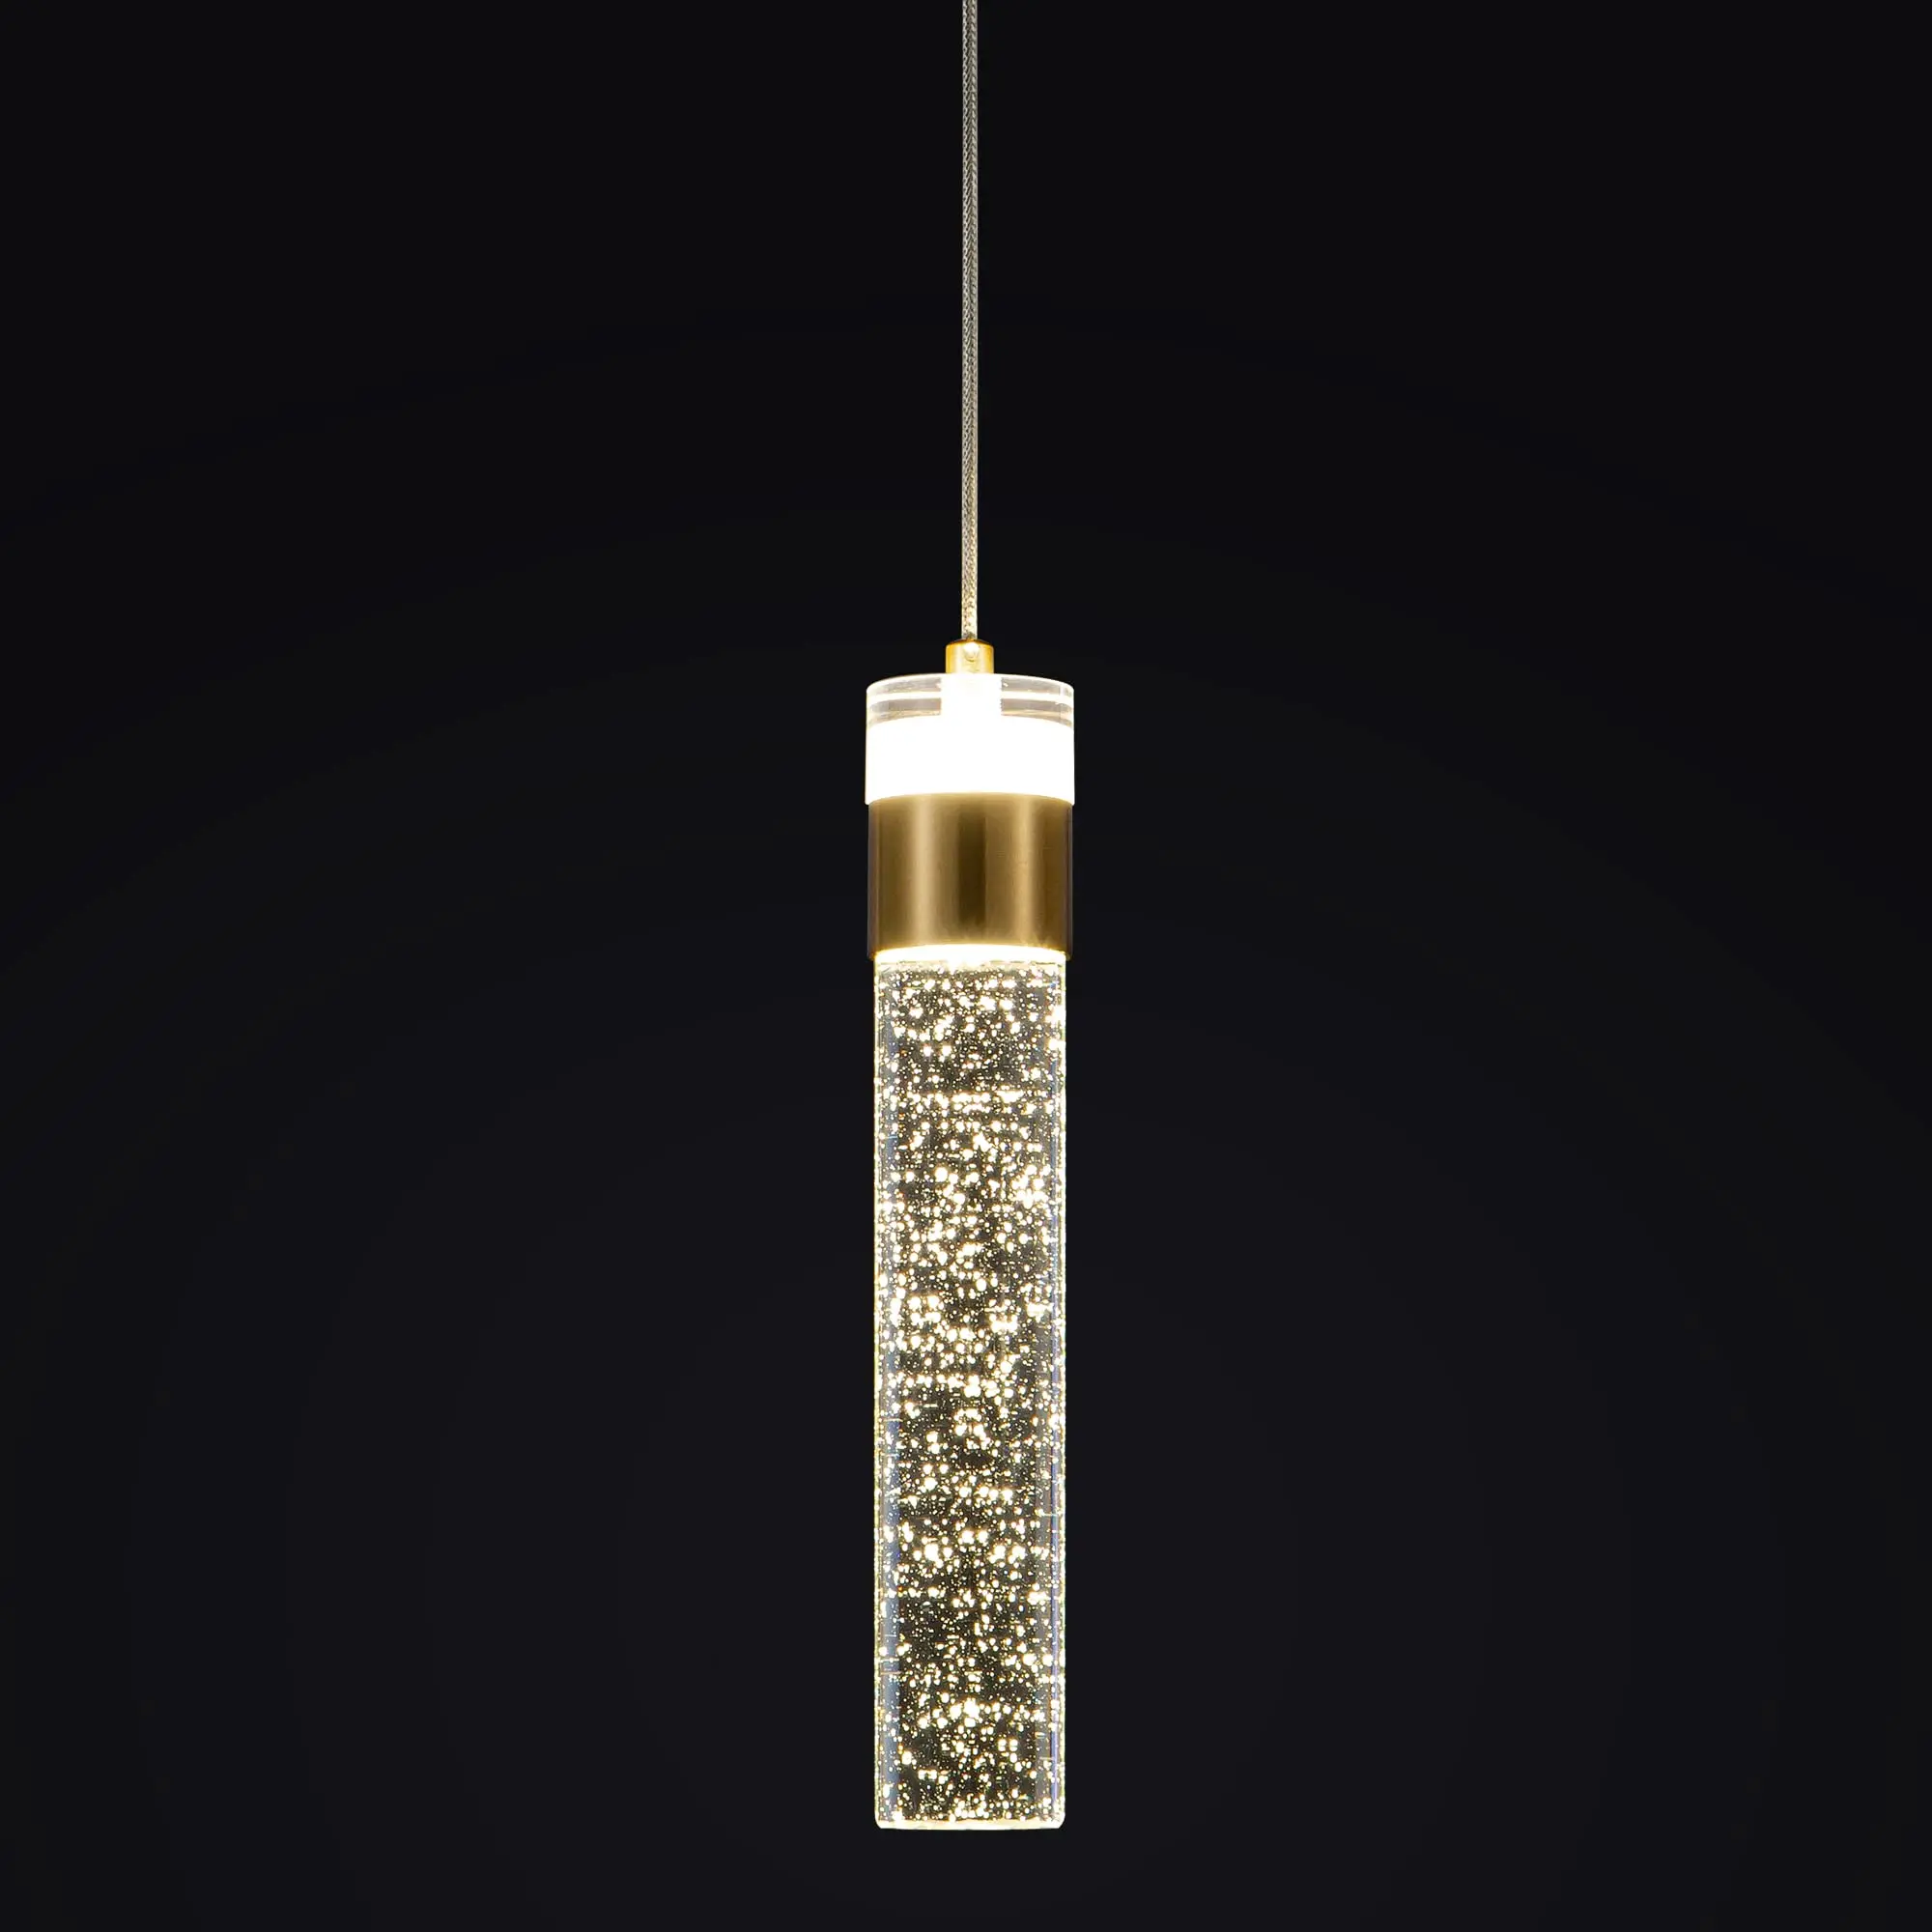 

Gold Pendant Light Fixtures Crystal Hanging Light for Kitchen Island Lighting 4000K LED Modern Adjustable Bedroom Living Room